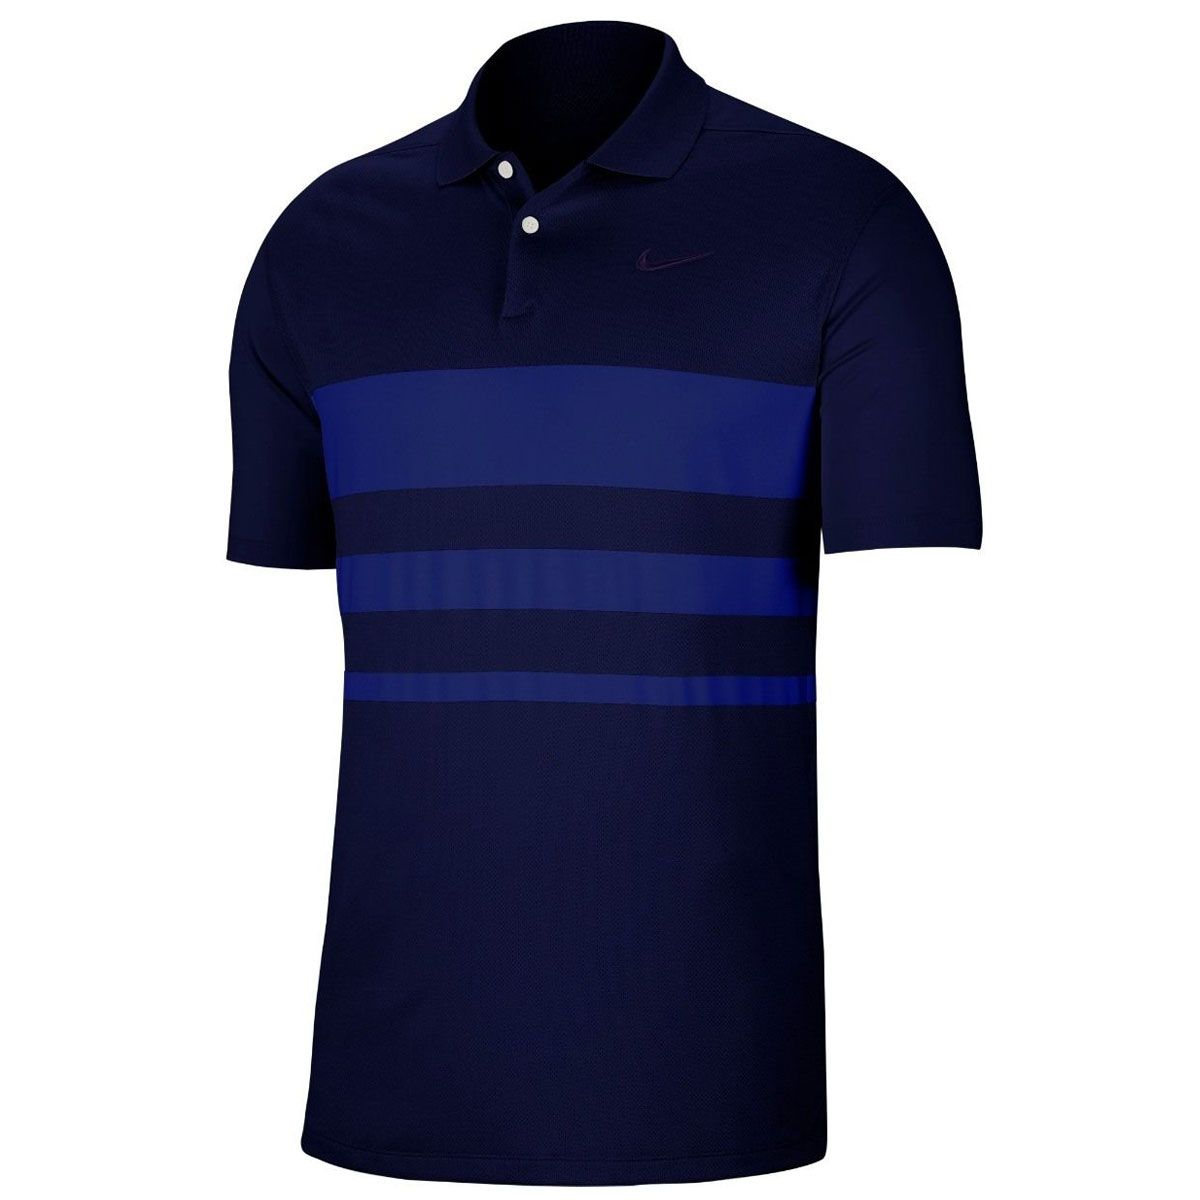 royal blue nike golf shirt